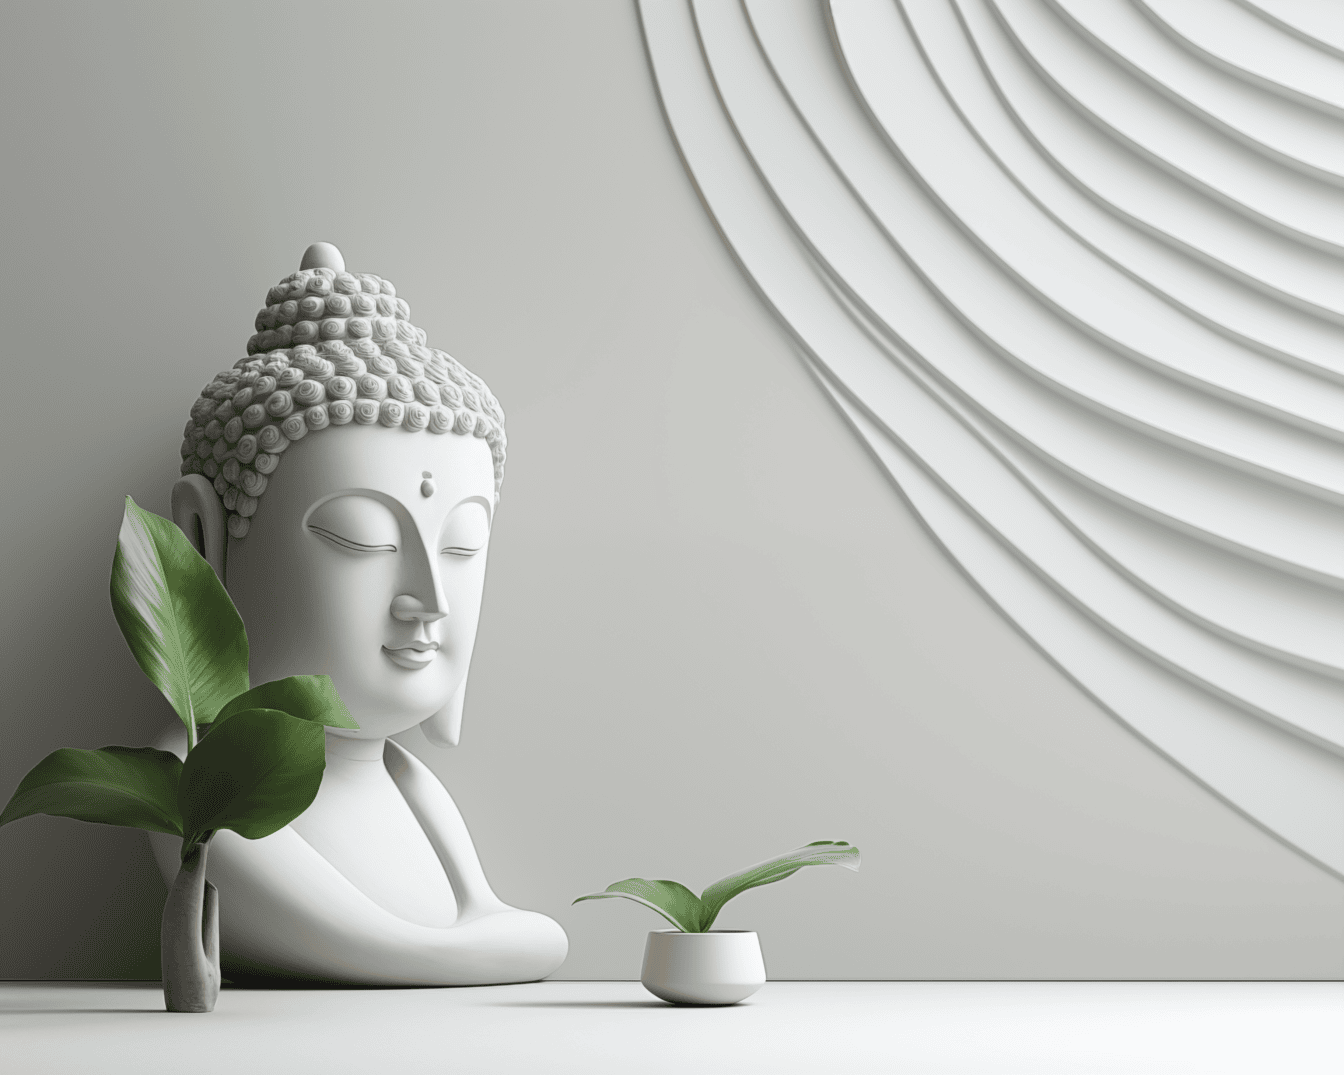 Desain interior minimalis dengan patung Buddha putih di samping vas dan dengan dekorasi modern di dinding putih